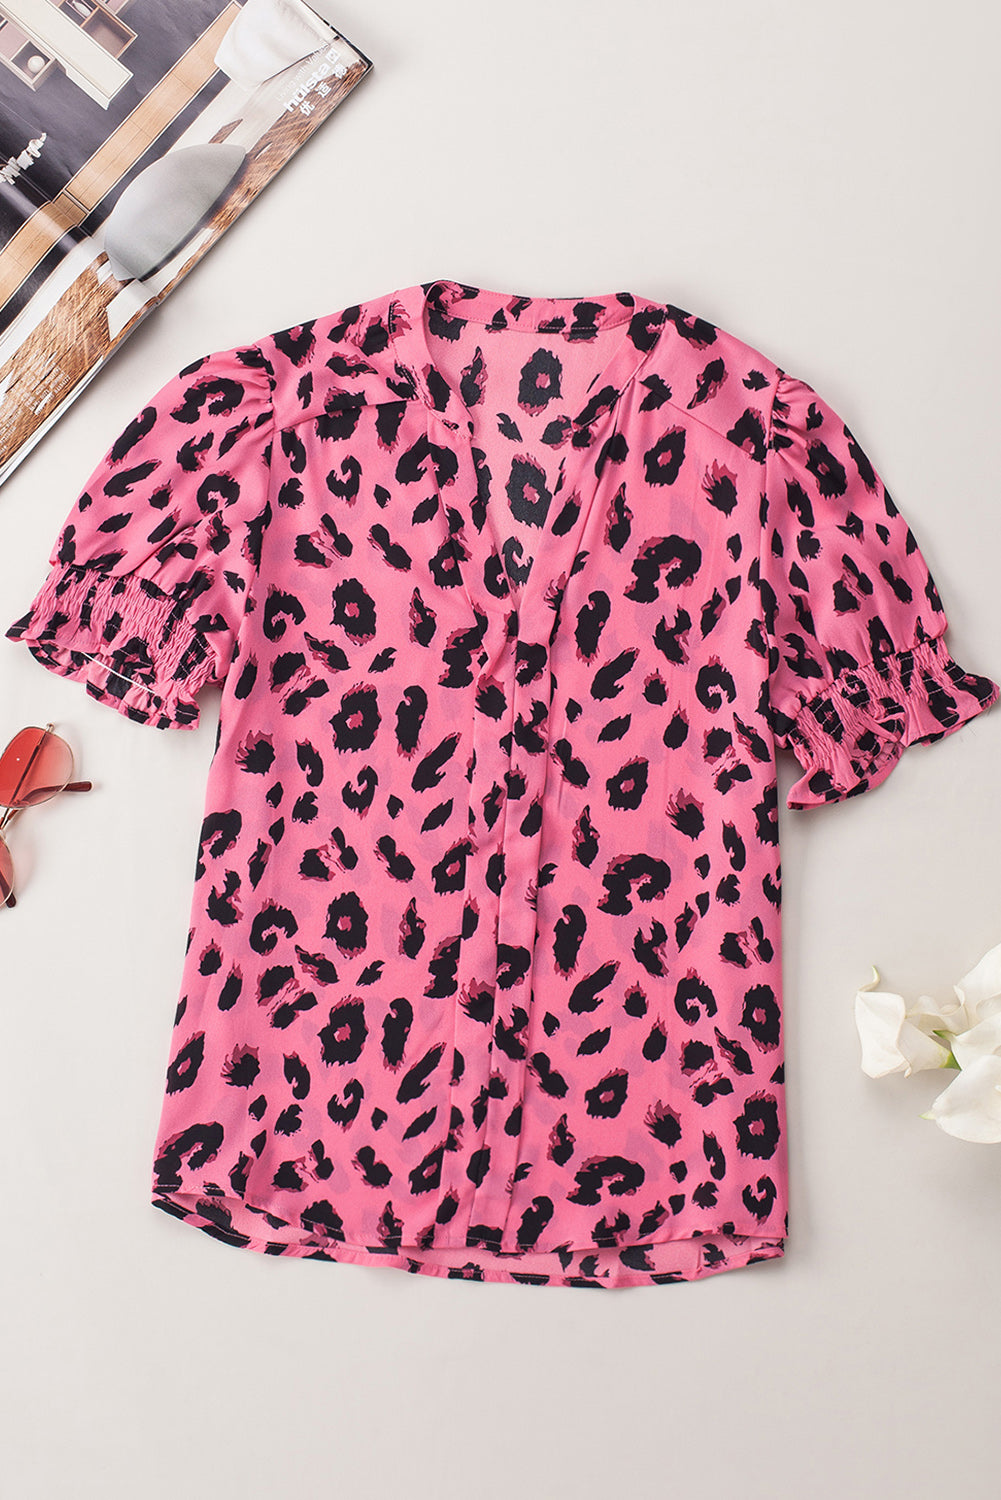 Rosafarbene Bluse mit eingekerbtem Ausschnitt und Blasenärmeln und Leopardenmuster